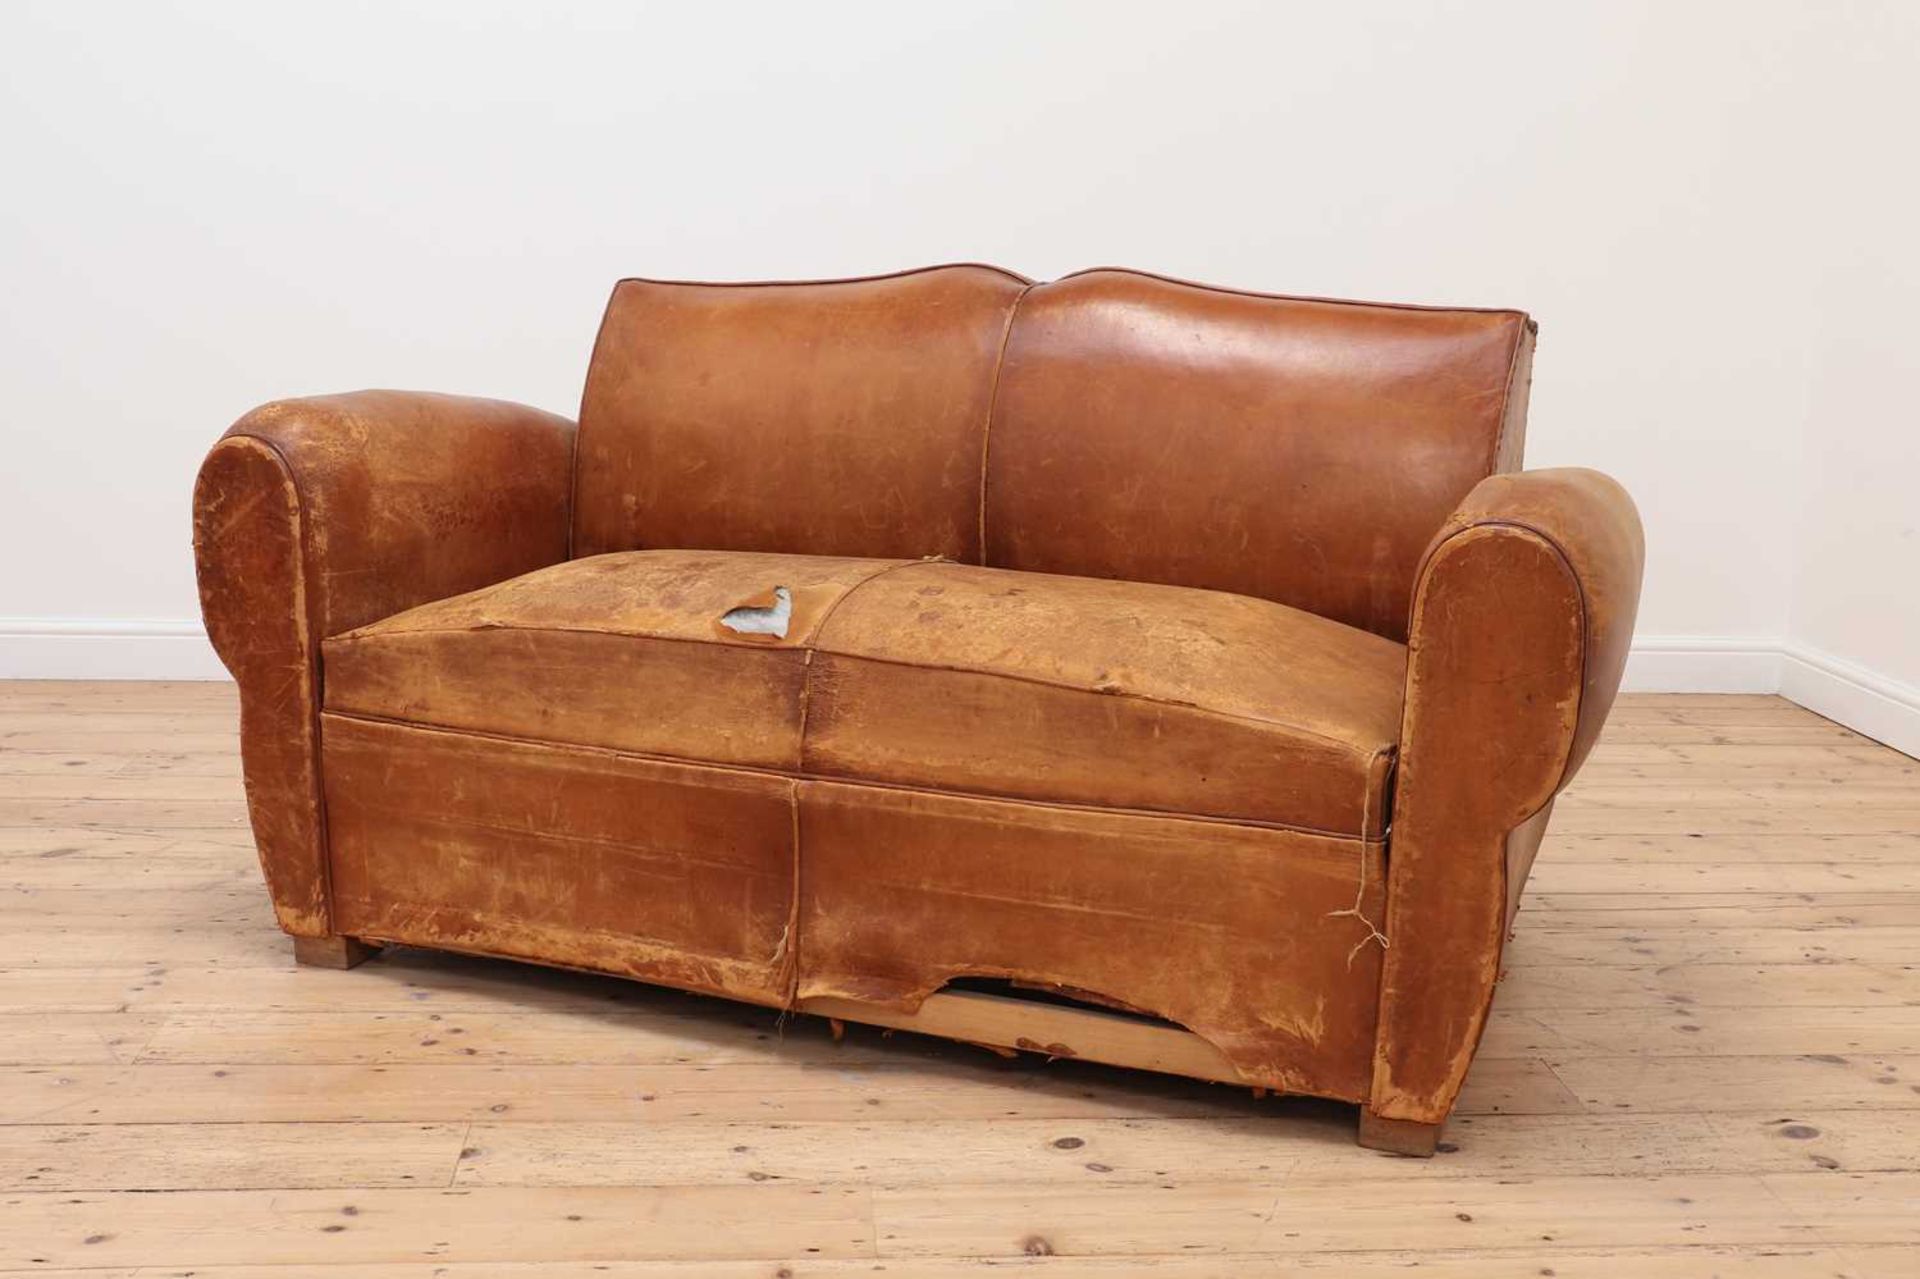 A leather sofa,